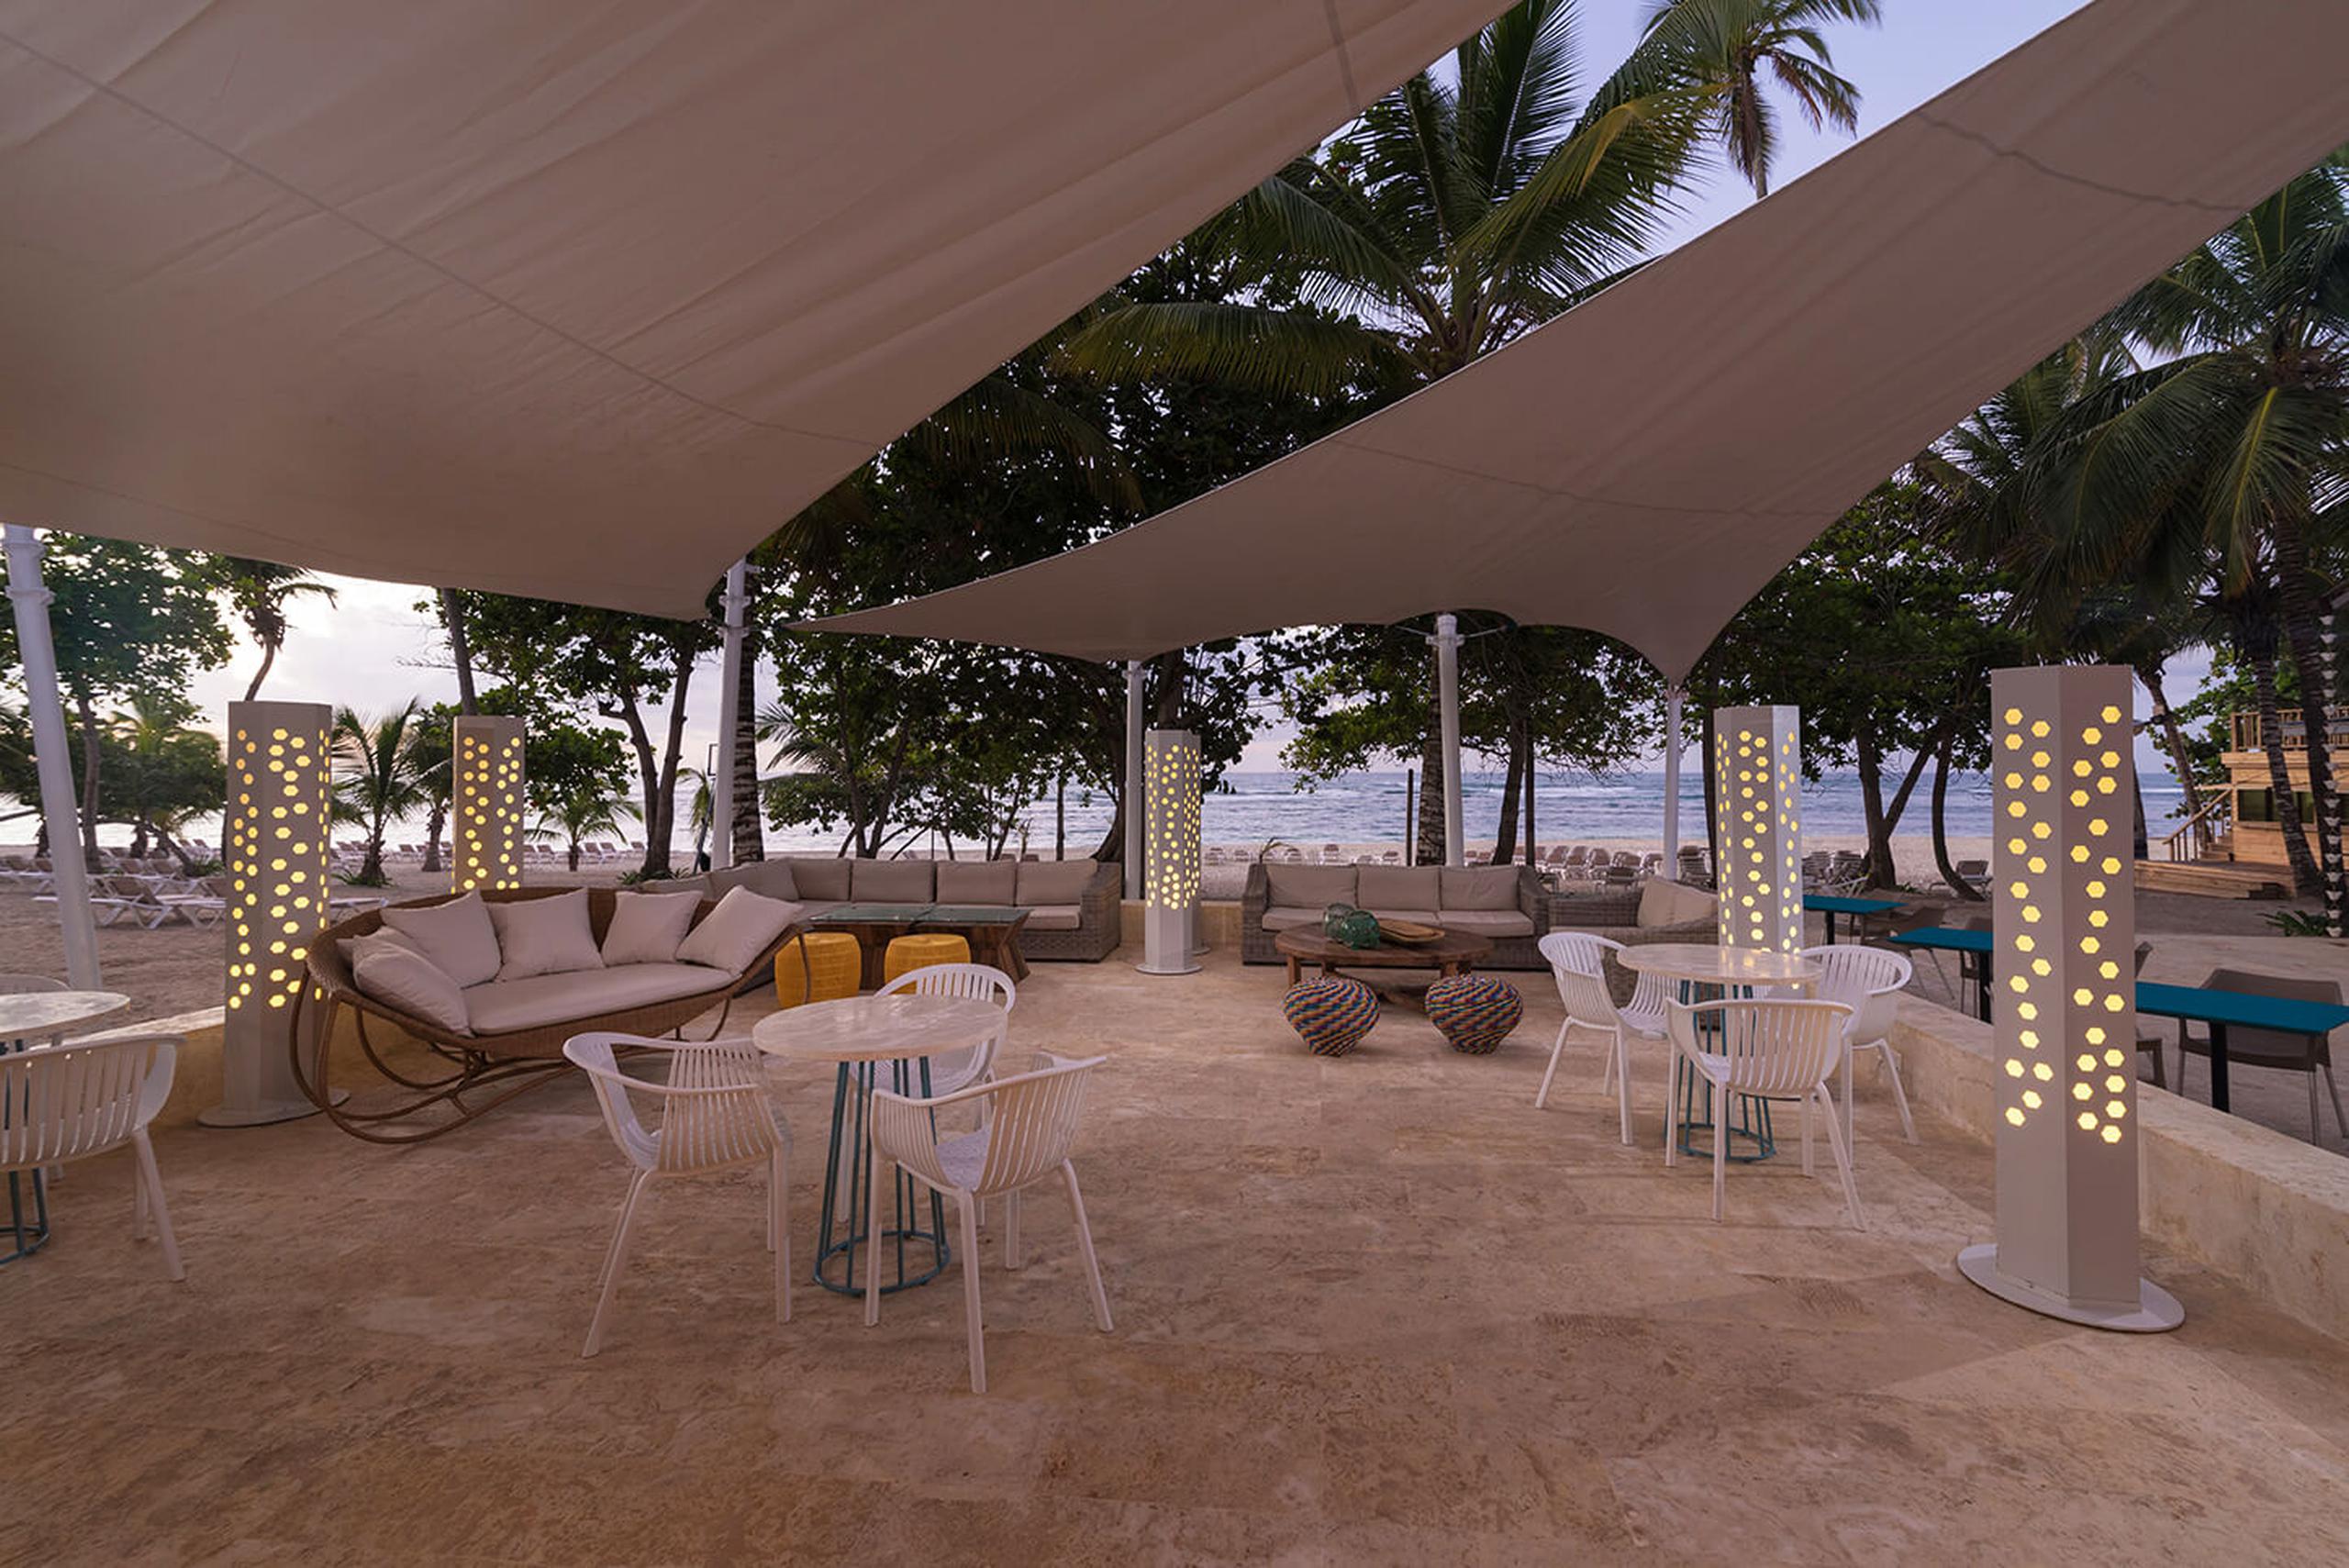 Entre sus seis restaurantes, el Hotel Hodelpa cuenta con esta terraza con vista directa a la playa.